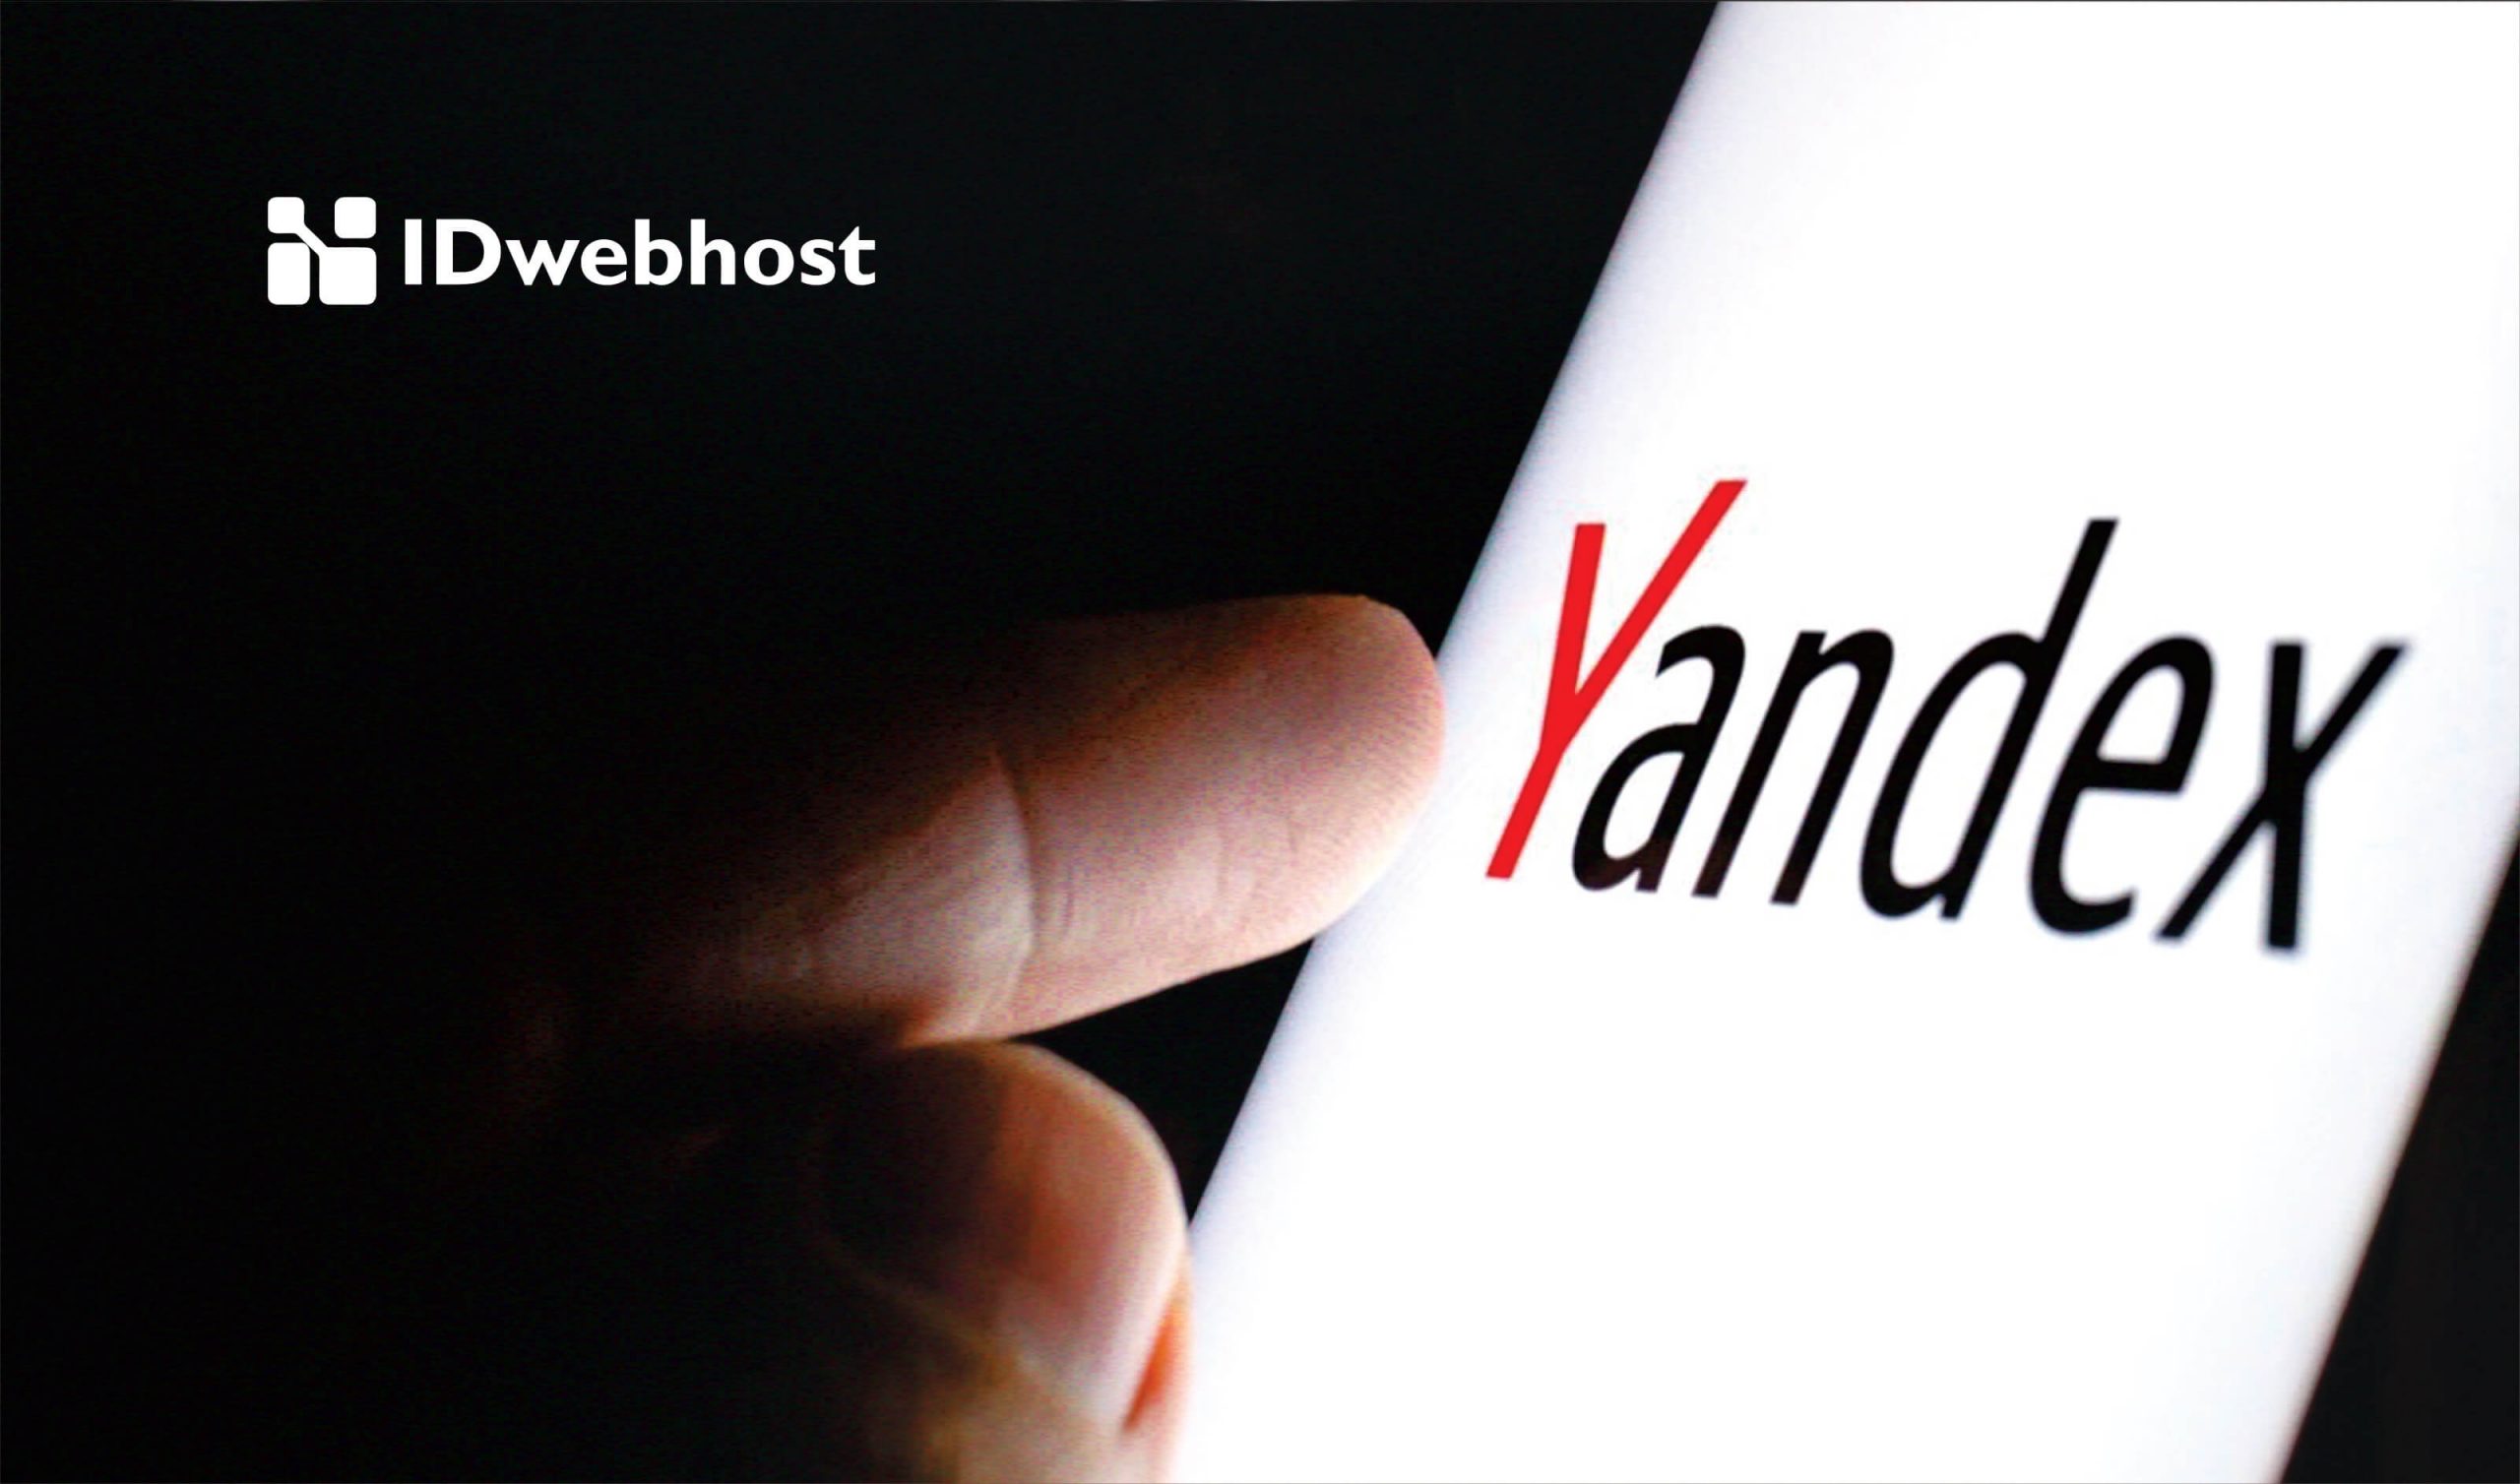 Yandex Adalah: Pengertian, Produk Layanan, Kelebihan, Kekurangan, dan Cara Menggunakannya